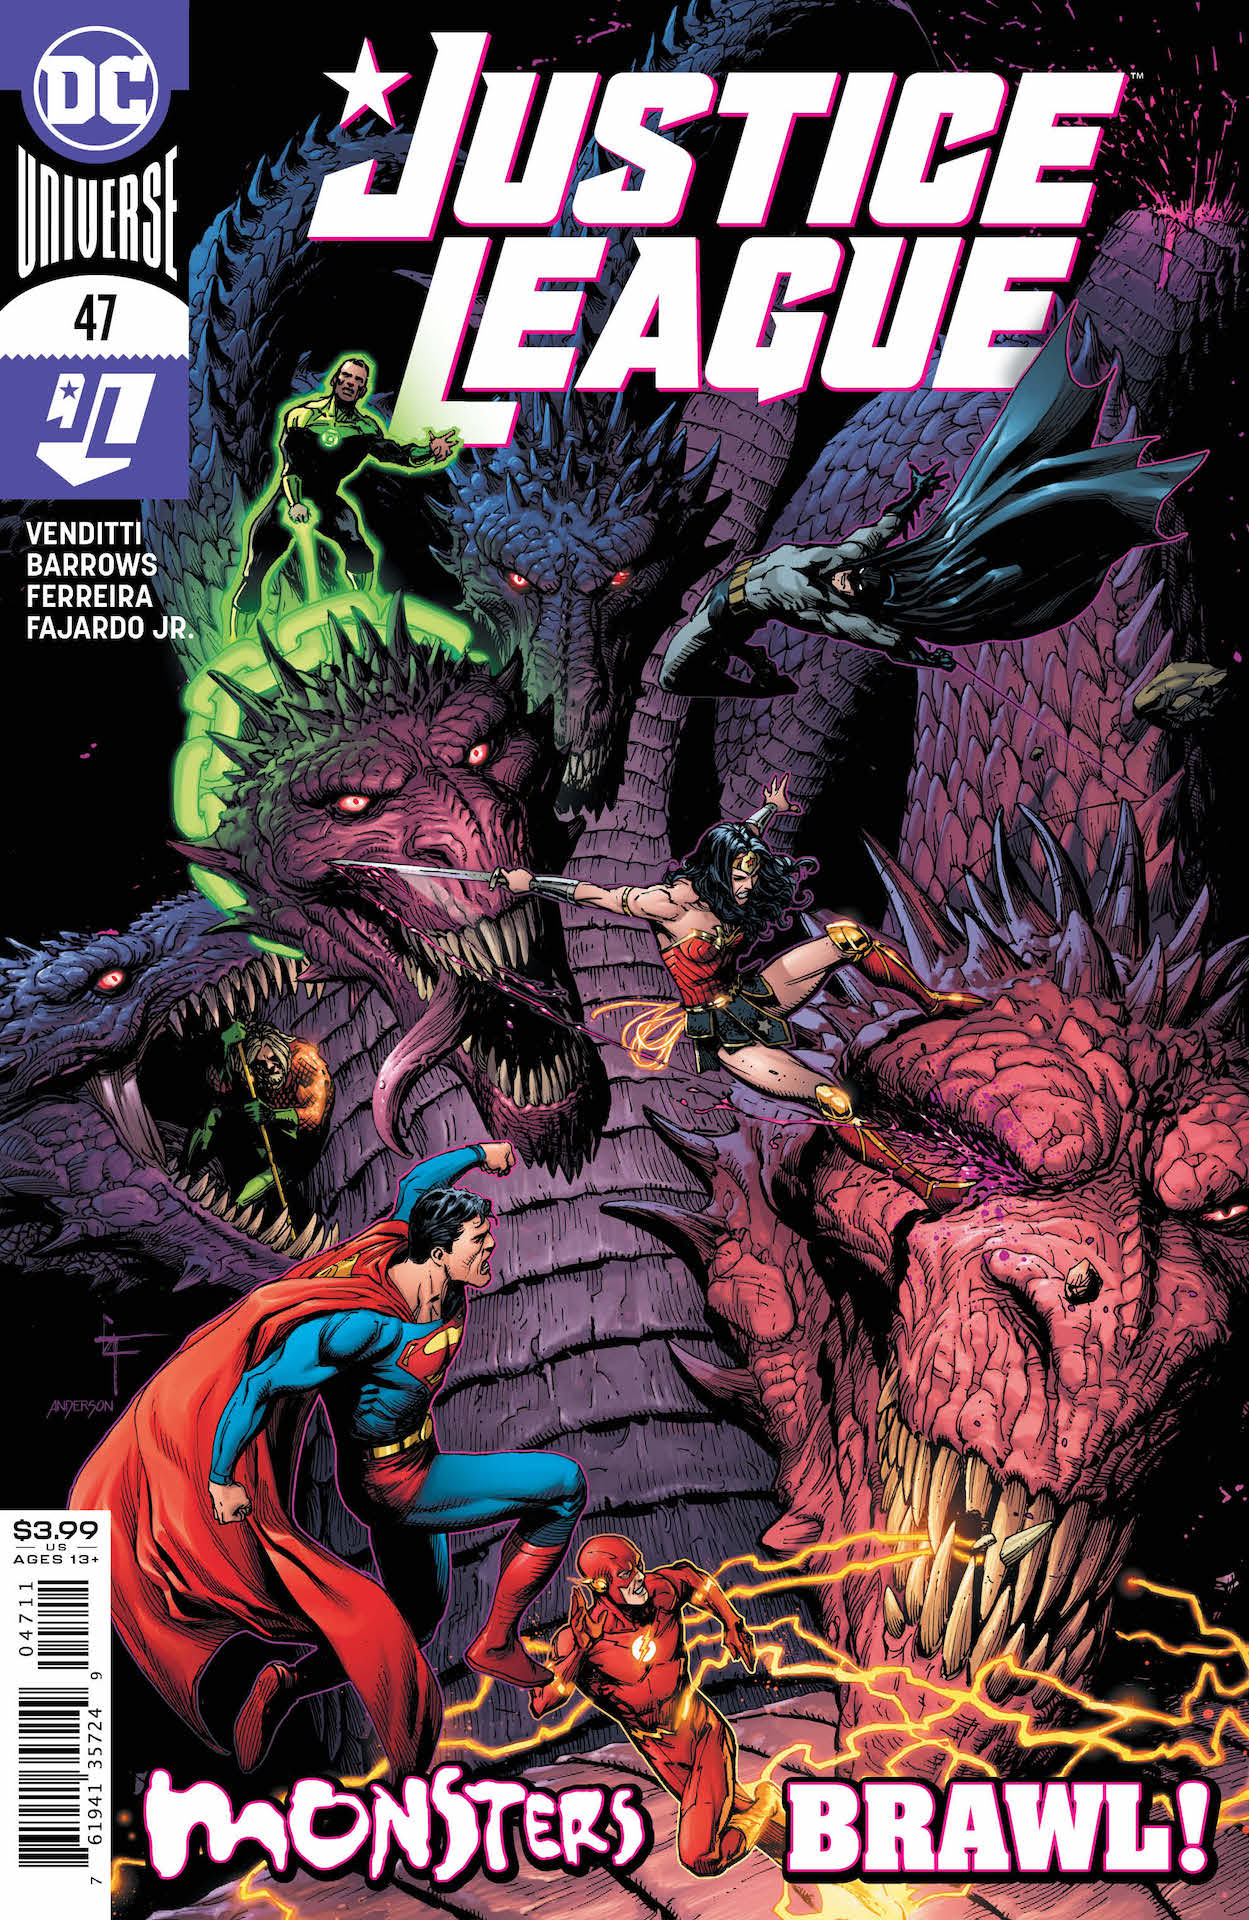 DC Preview: Justice League #47